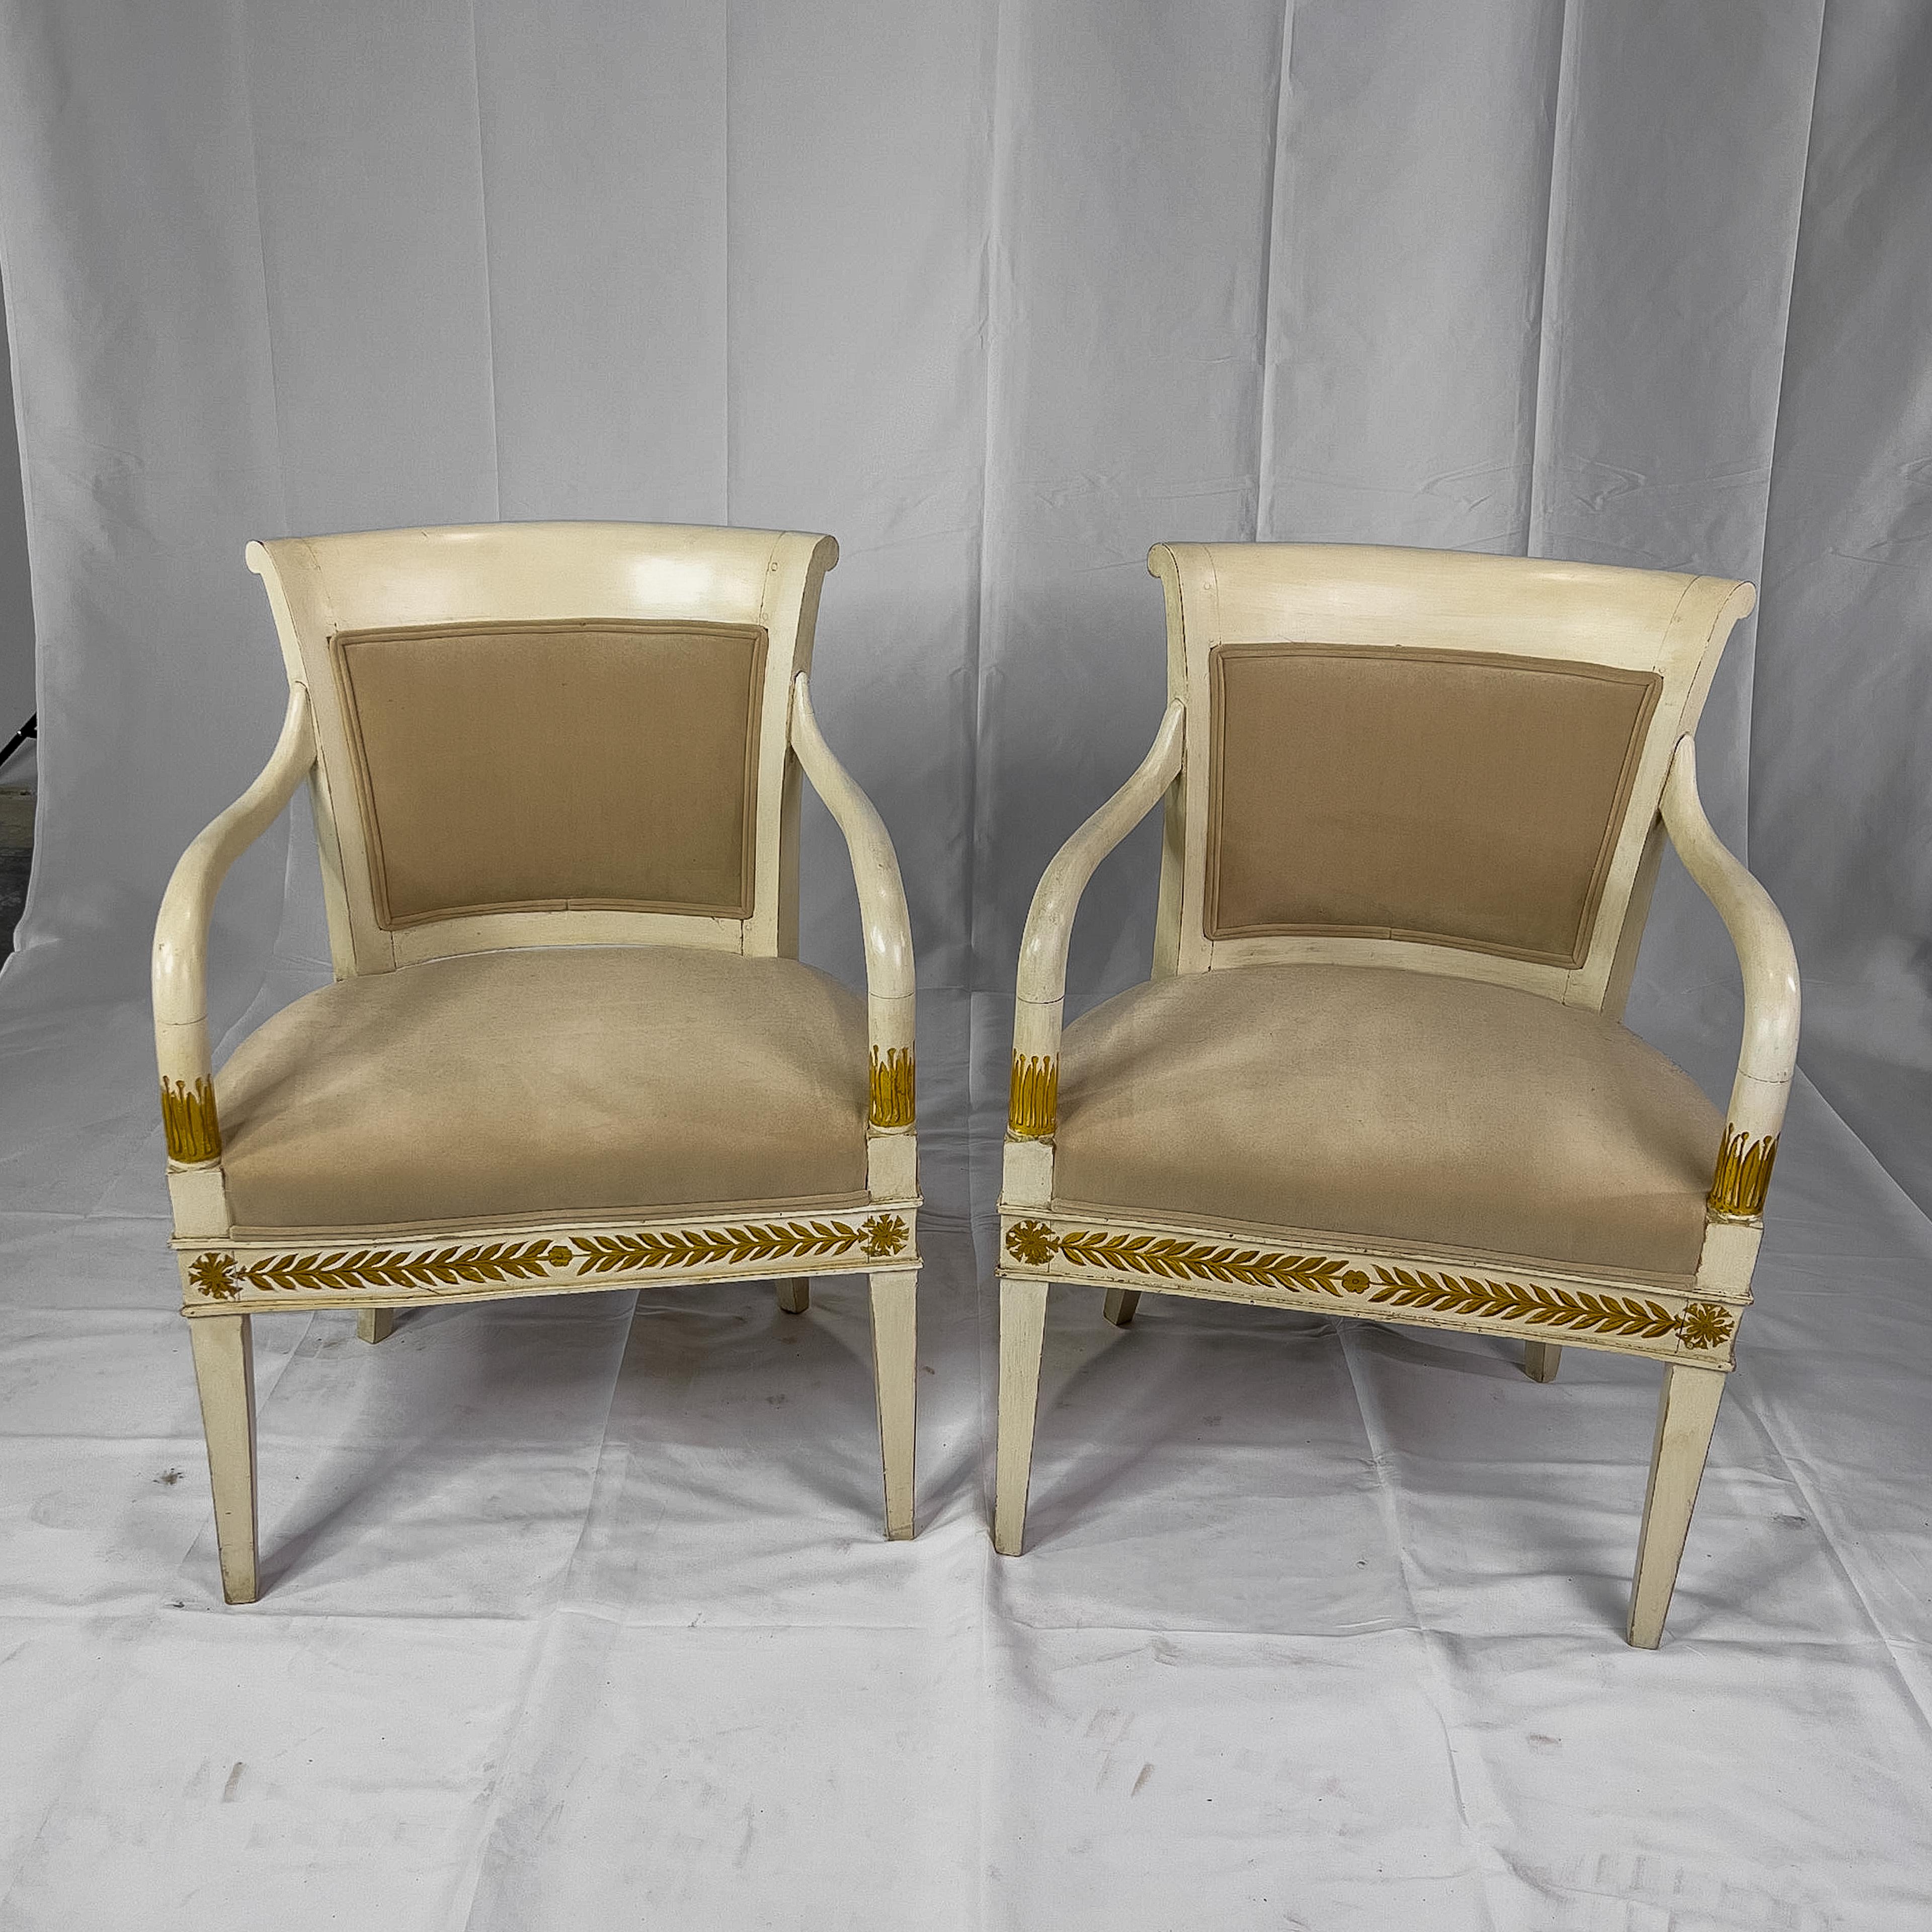 fauteuils italiens peints du 19ème siècle de style néoclassique avec des détails dorés, un dossier arrondi, un siège rembourré et des bras courbés.